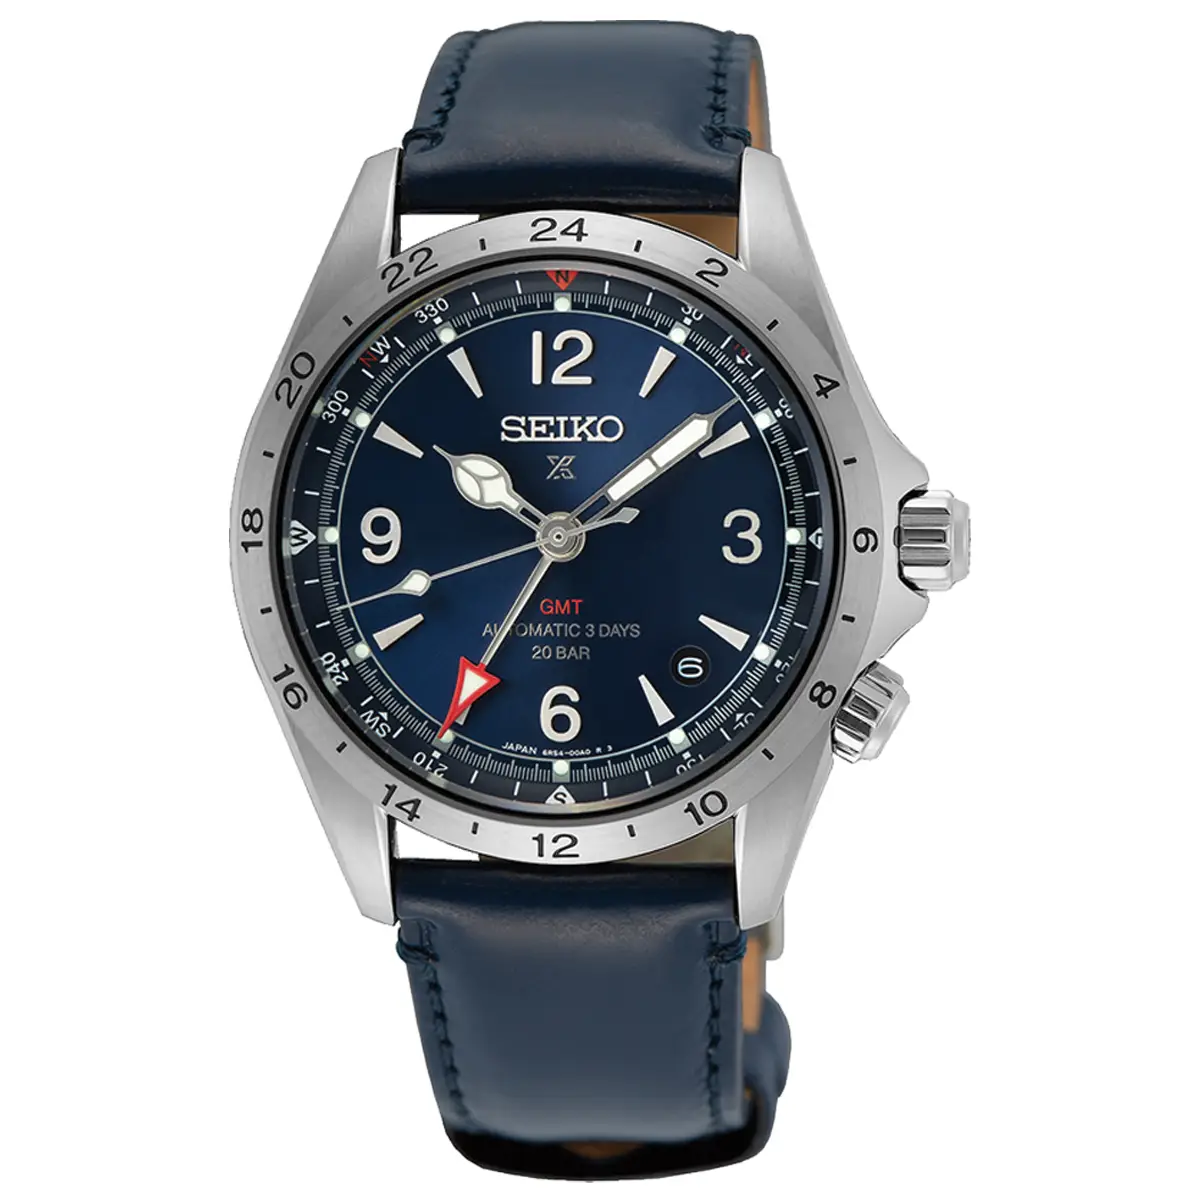 Đồng hồ Seiko Prospex Land GMT SPB377 mặt số màu xanh. Dây đeo bằng da. Thân vỏ bằng thép.